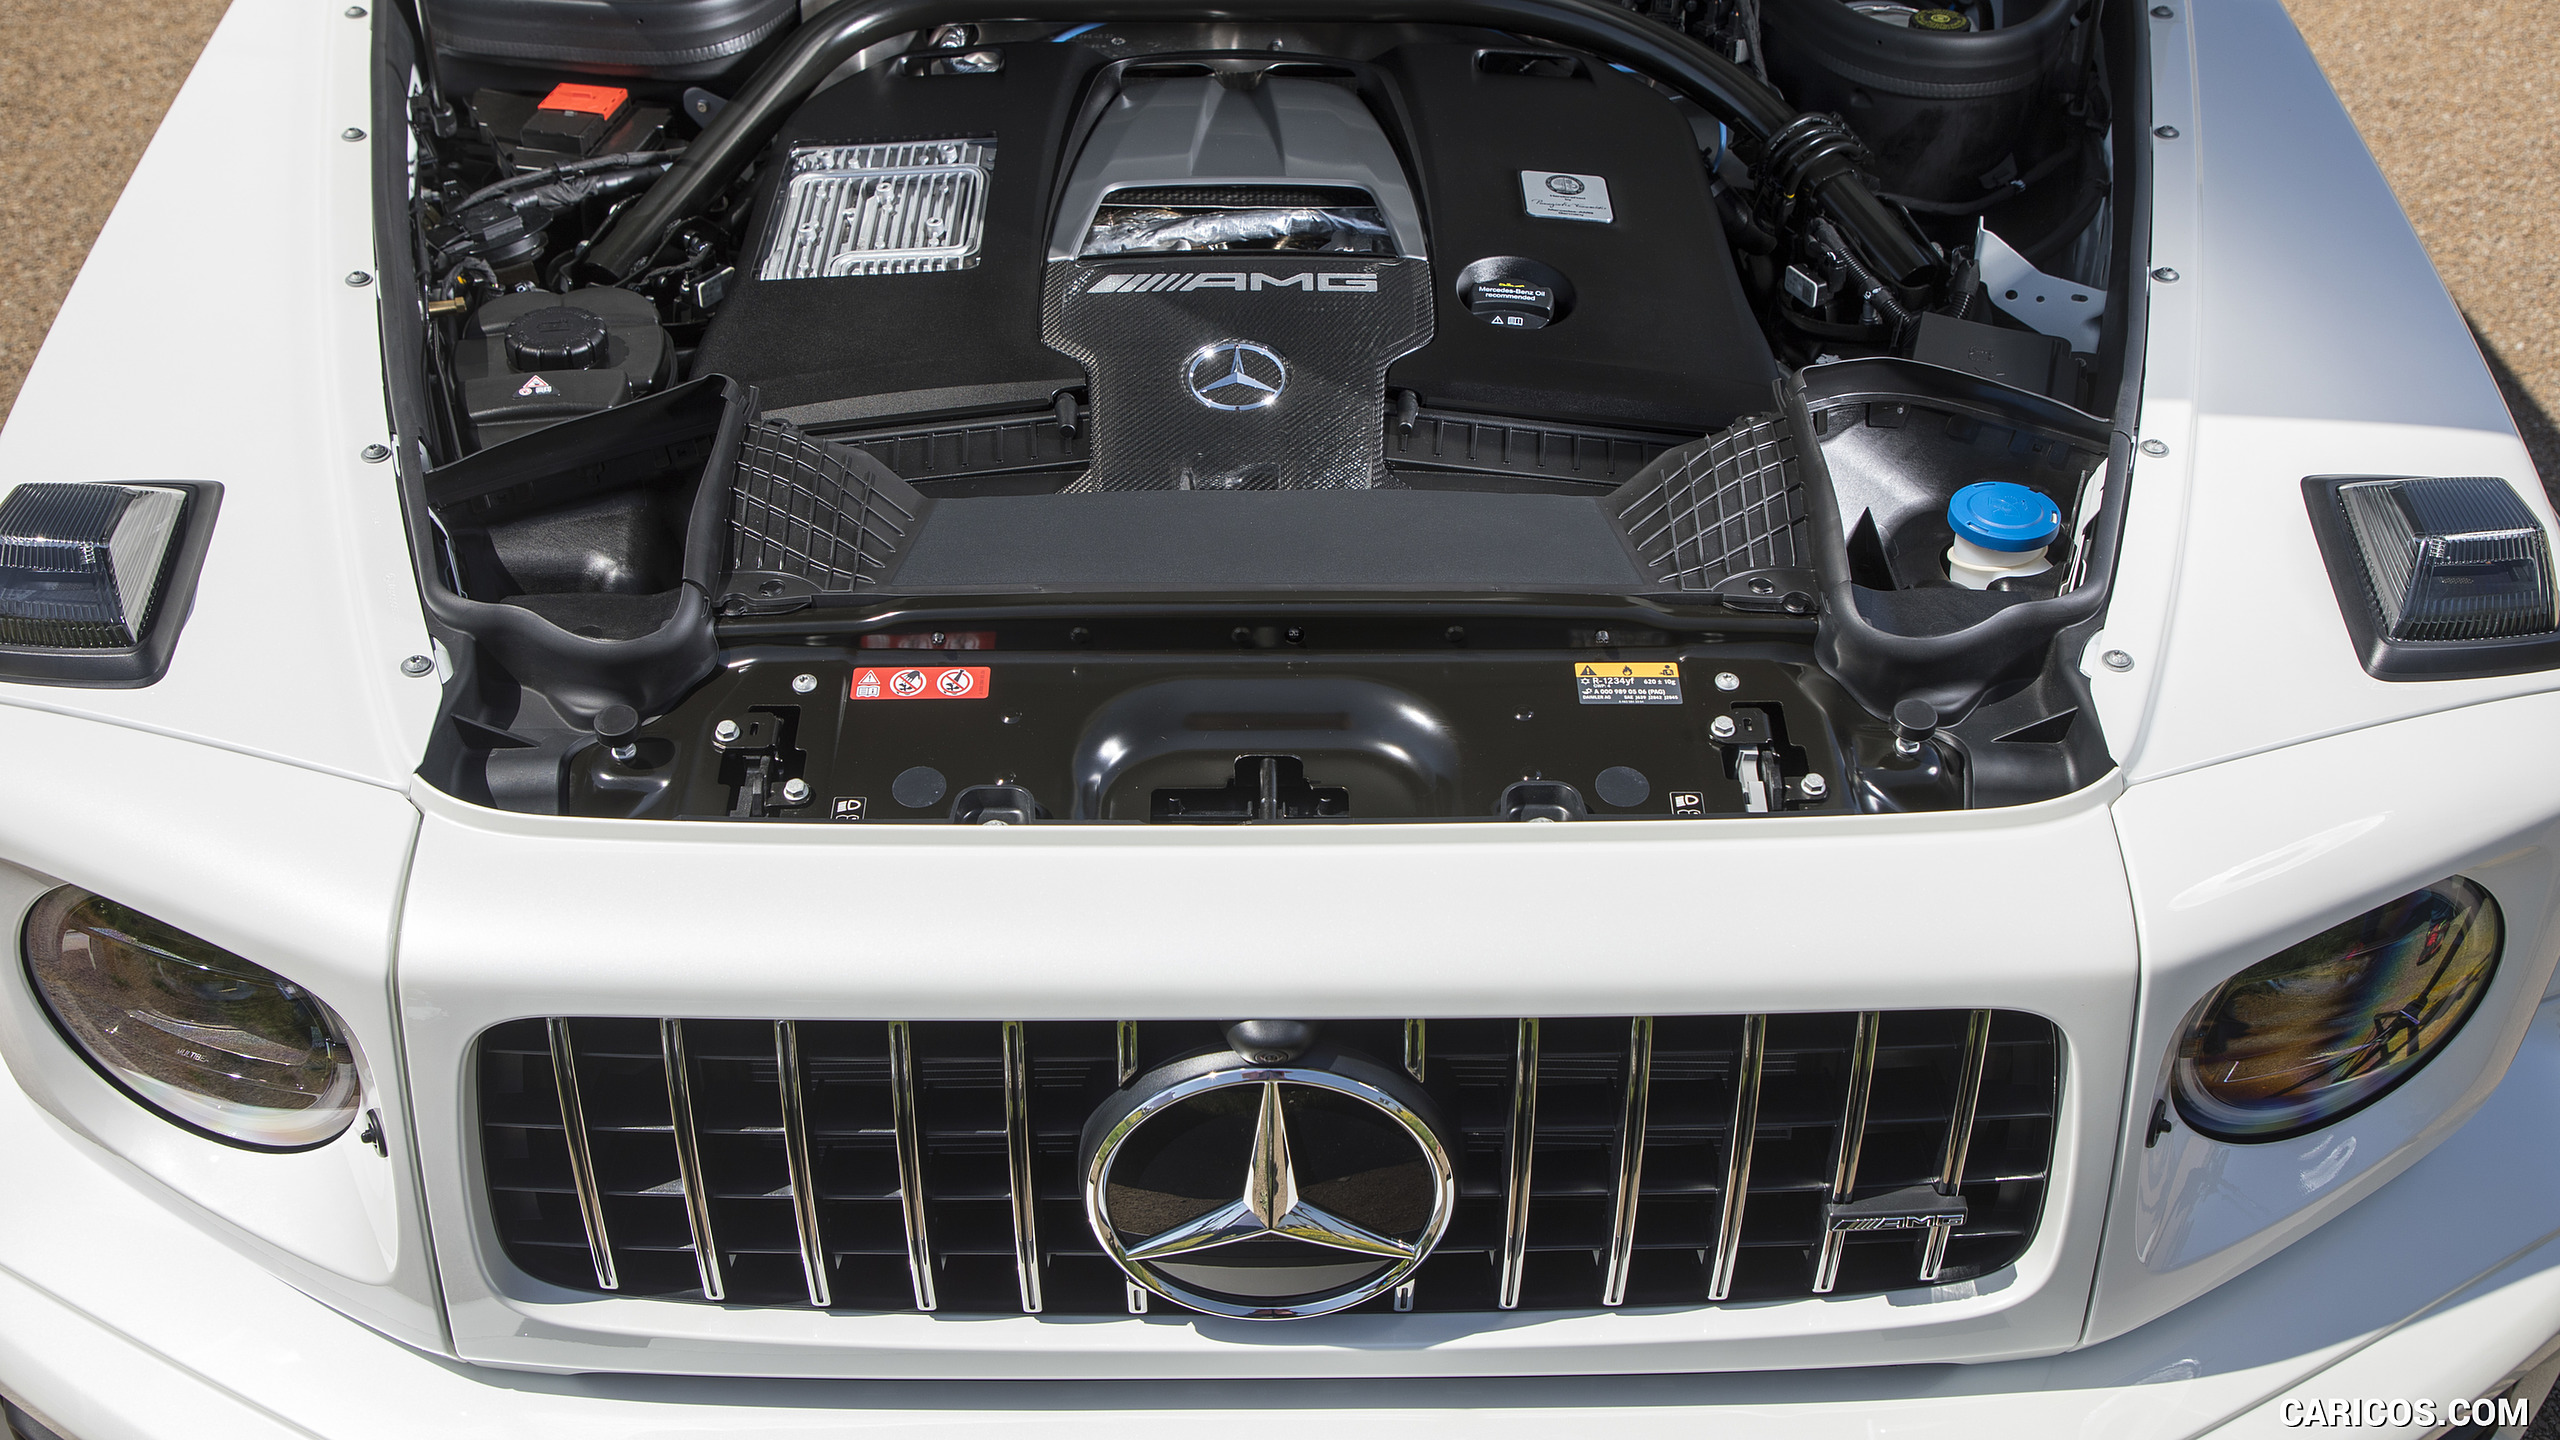 2019 Mercedes-AMG G63 (Color: Designo Diamond White Bright) - Engine, #102 of 452